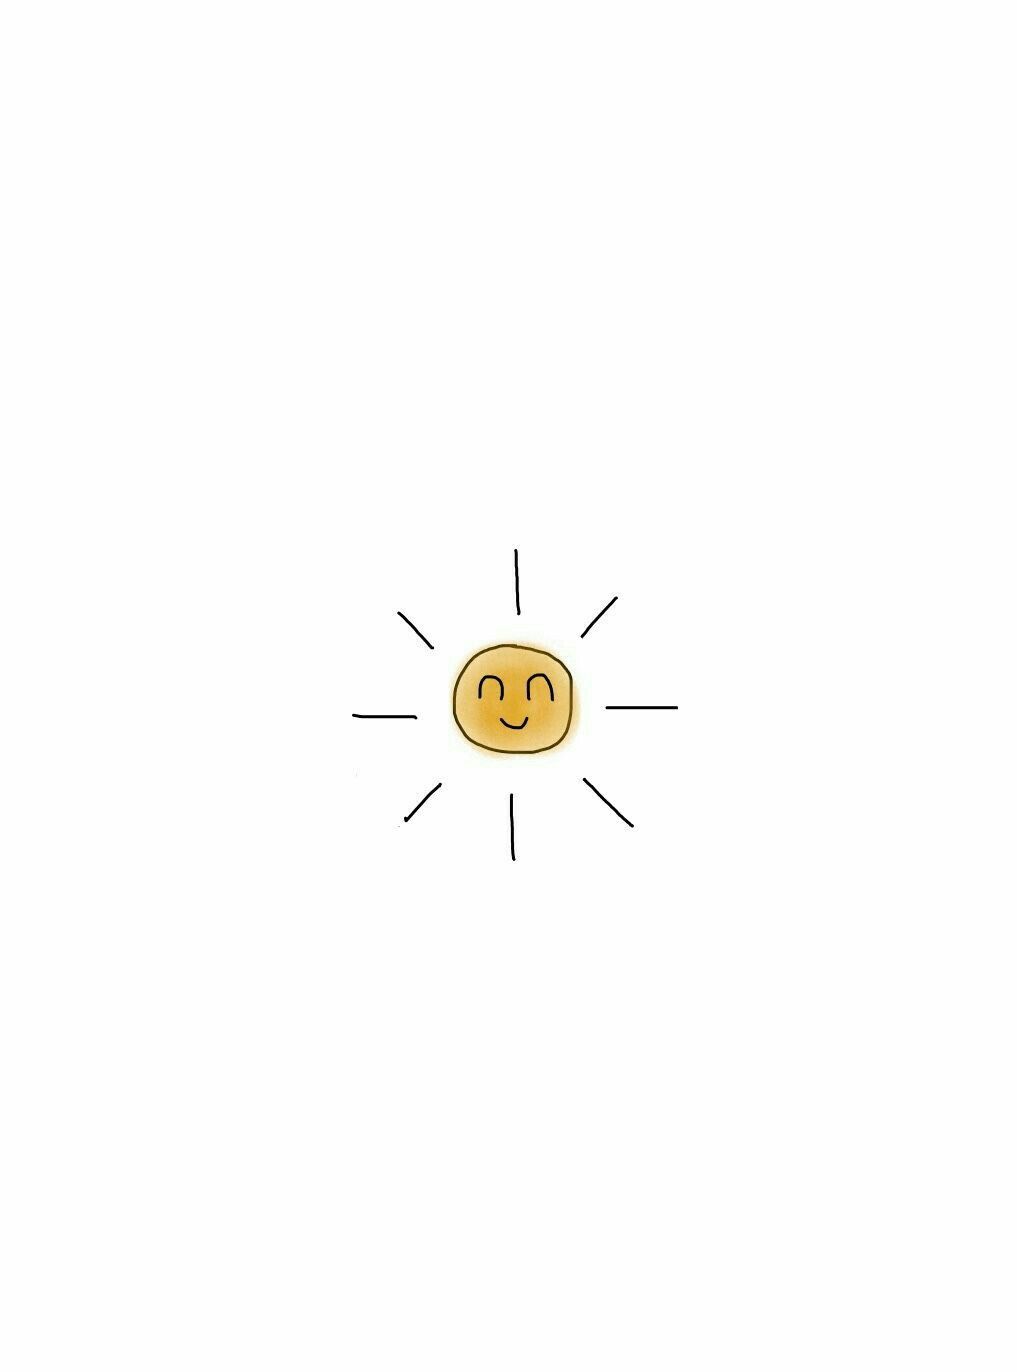 A sun with an eye and smile - Sunlight, sunshine, sun